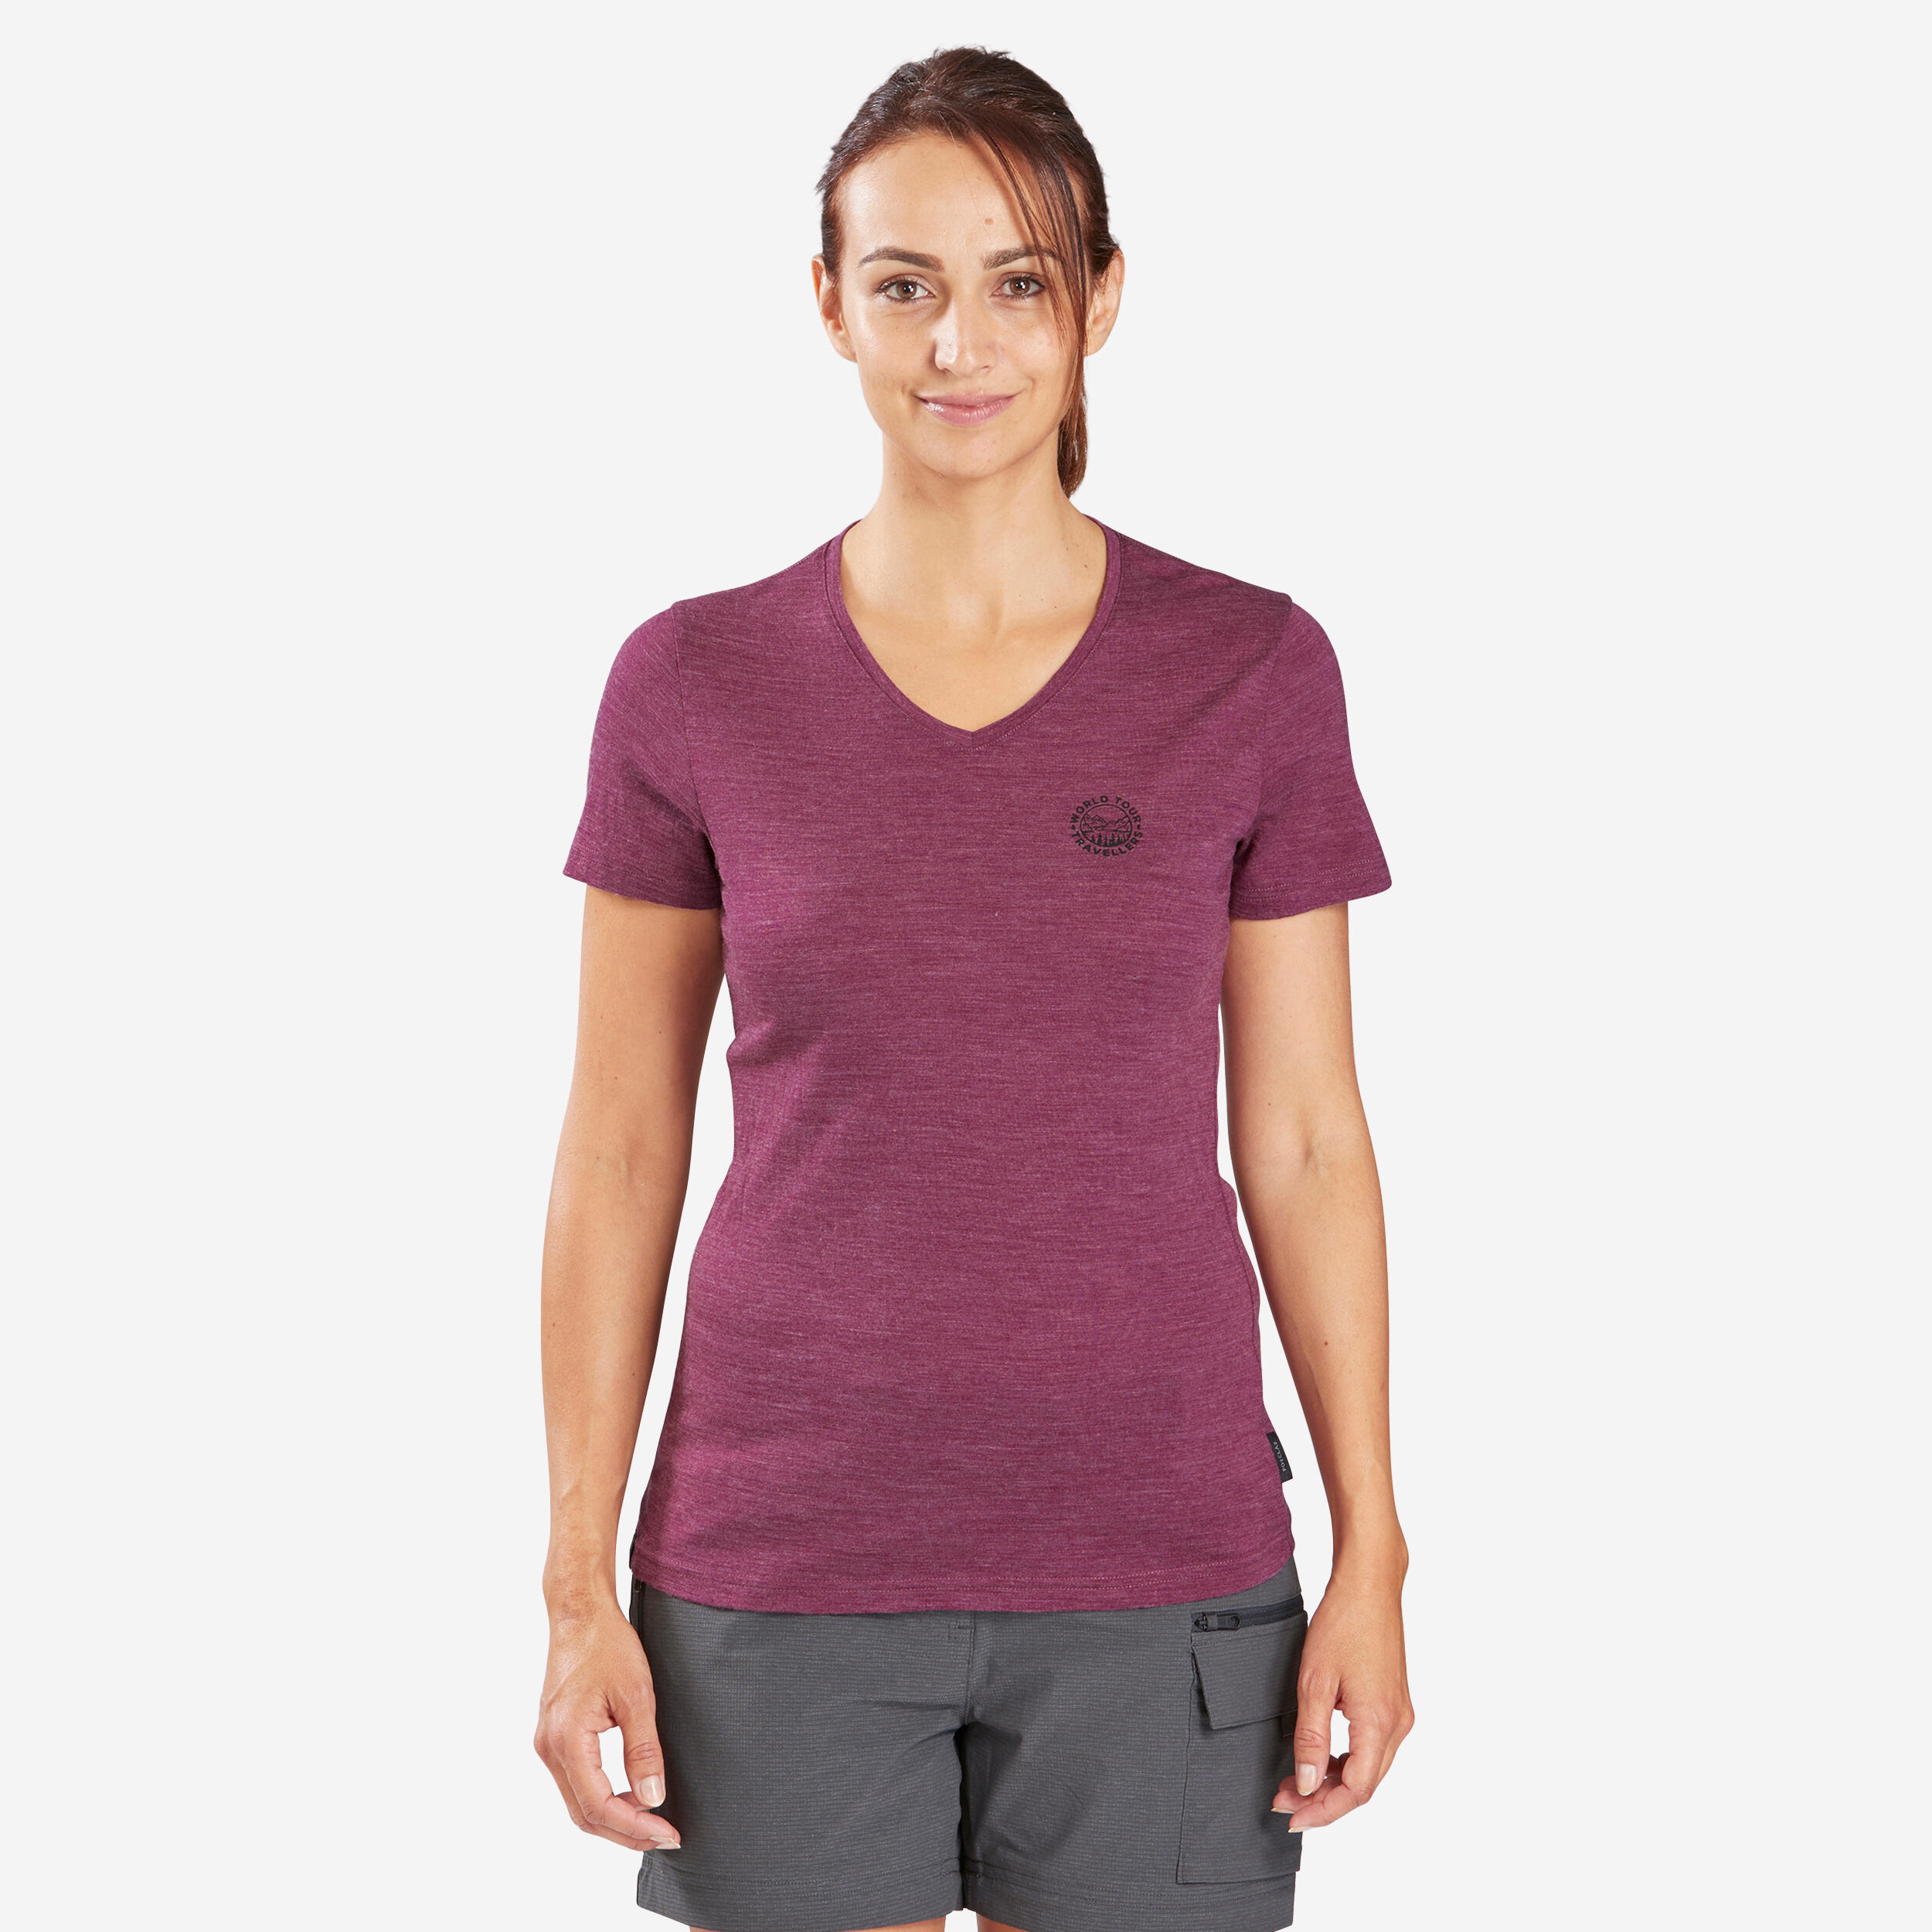 Women's Travel Trekking Merino Wool Short-Sleeved T-Shirt - TRAVEL 500 1/7